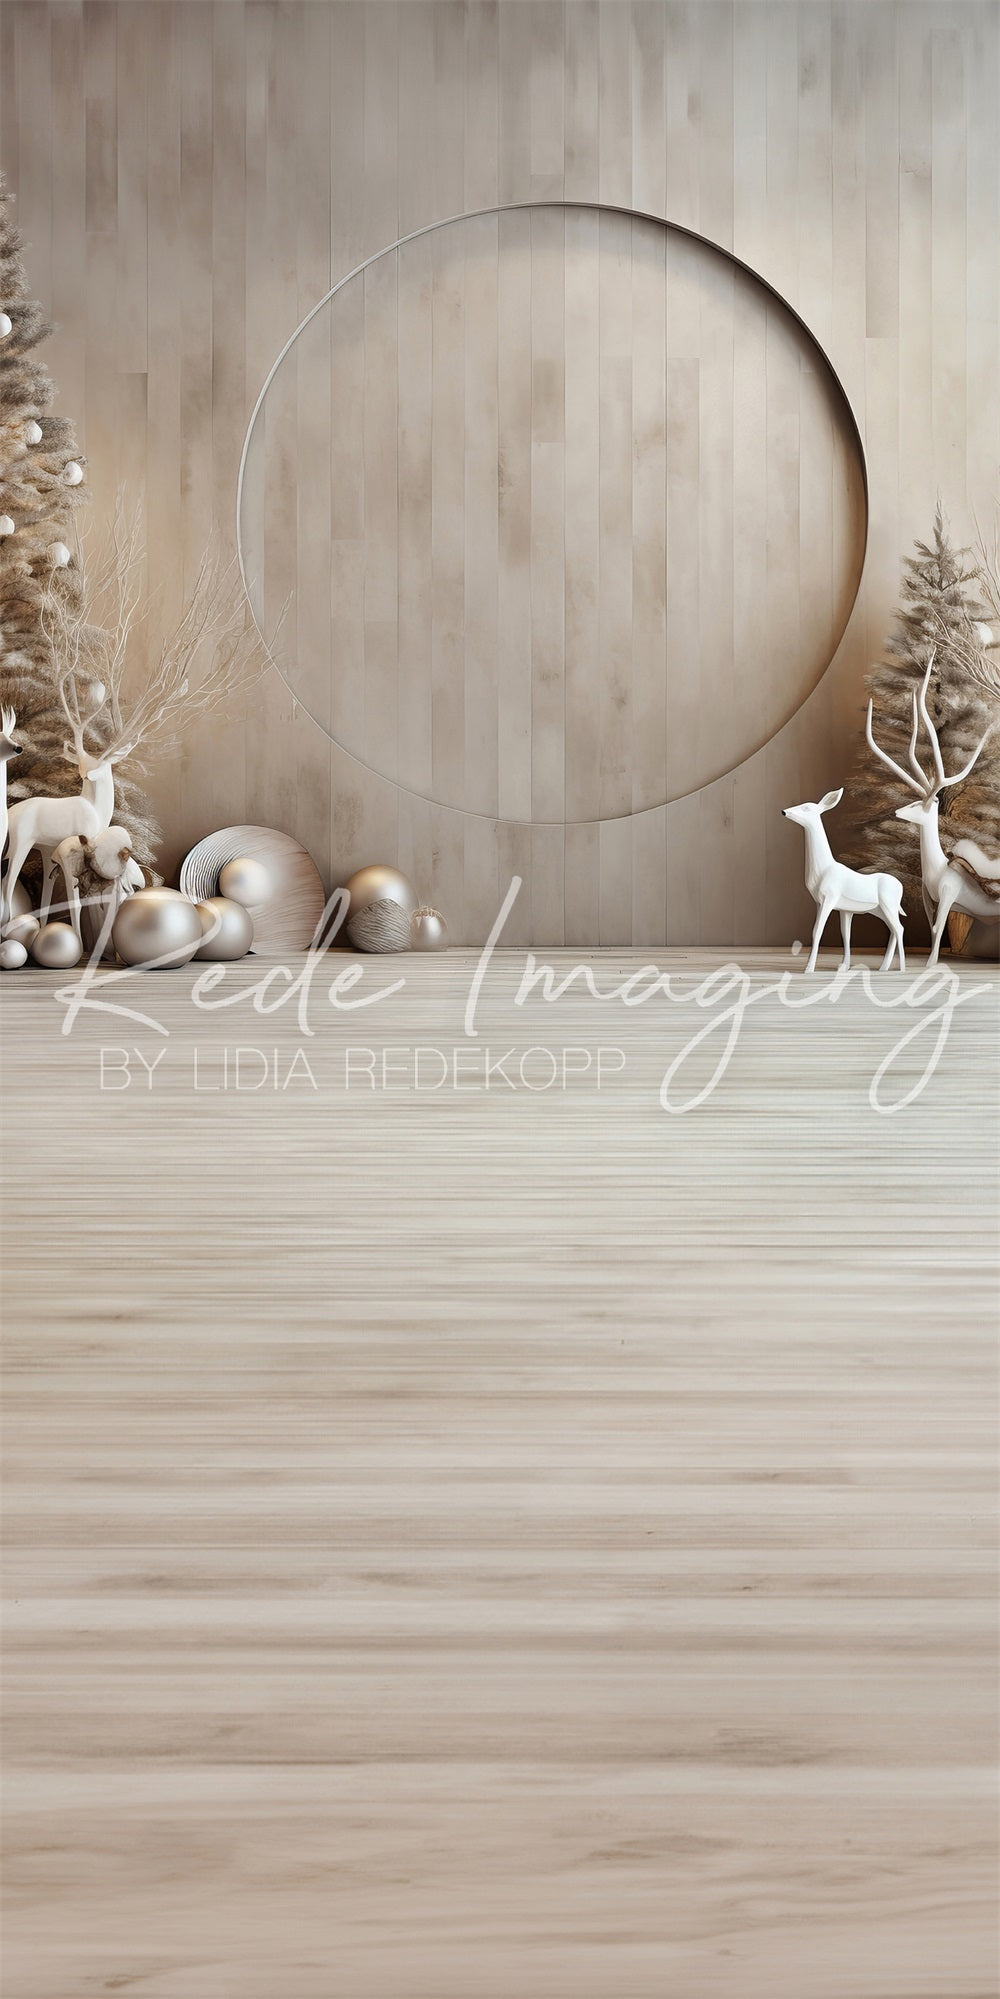 Kate Sweep Doe a Deer Christmas Backdrop Designed by Lidia Redekopp